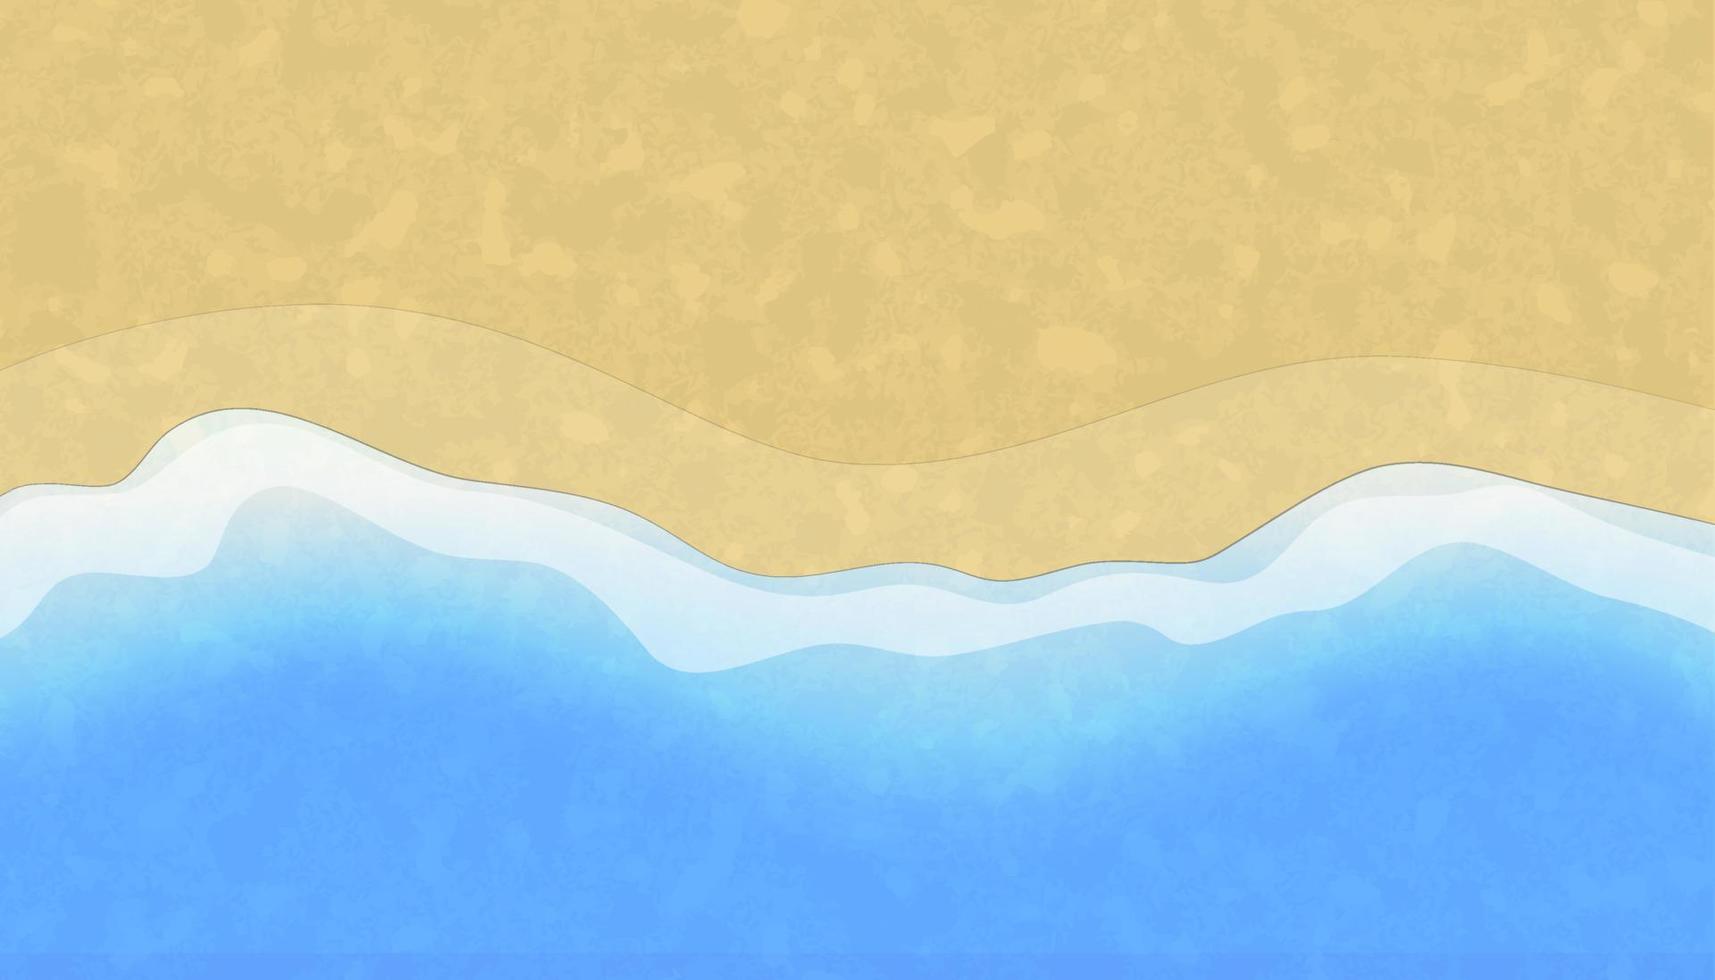 sfondo di vacanze estive. sabbia gialla e onde blu. vettore